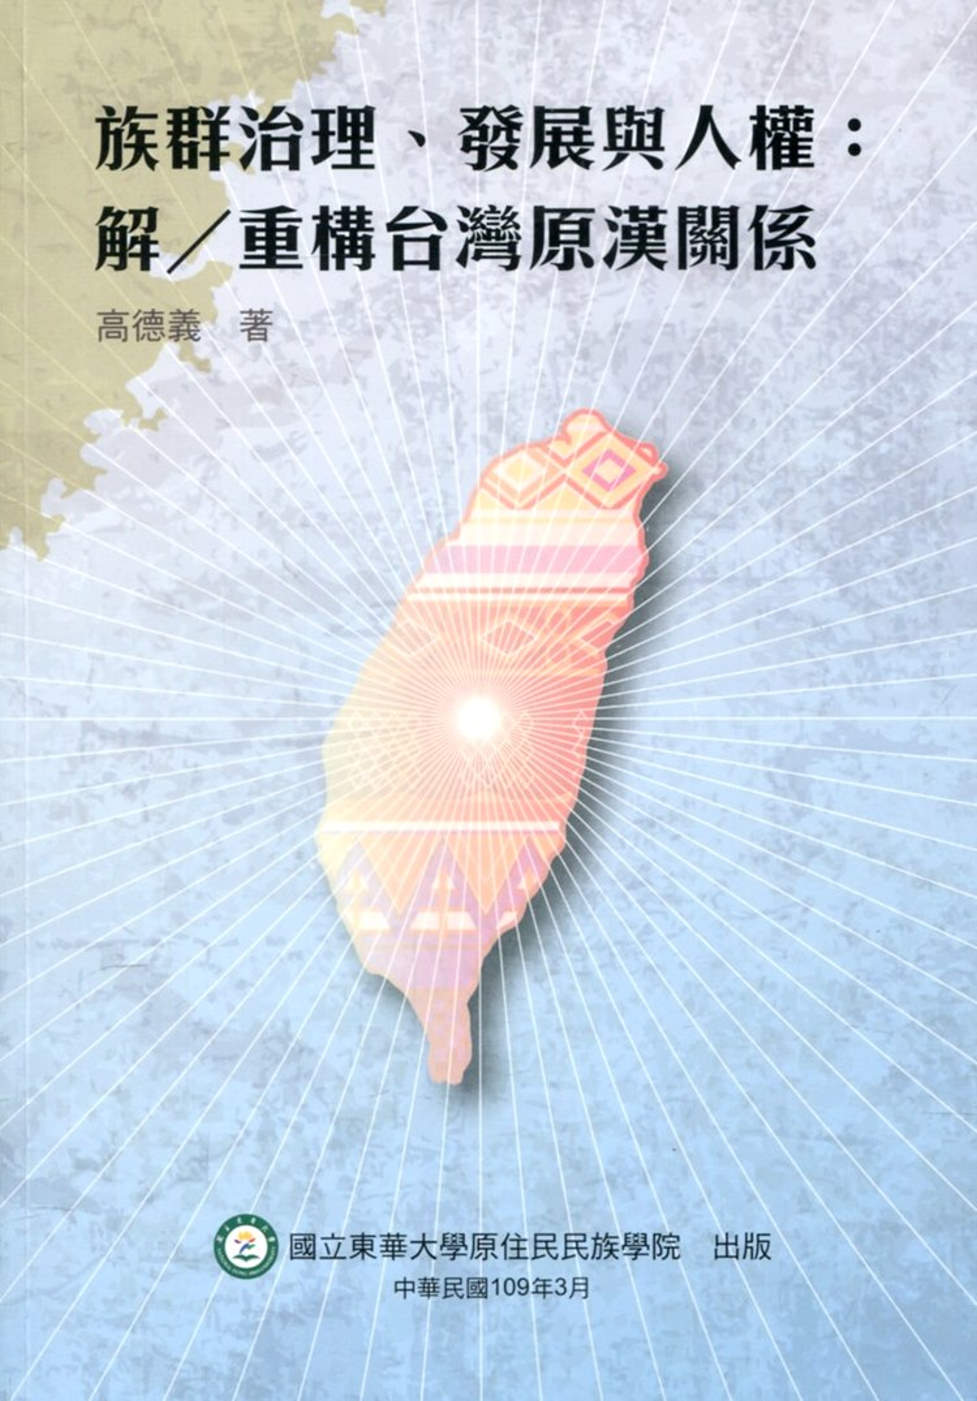 族群治理、發展與人權 : 解／重構台灣原漢關係